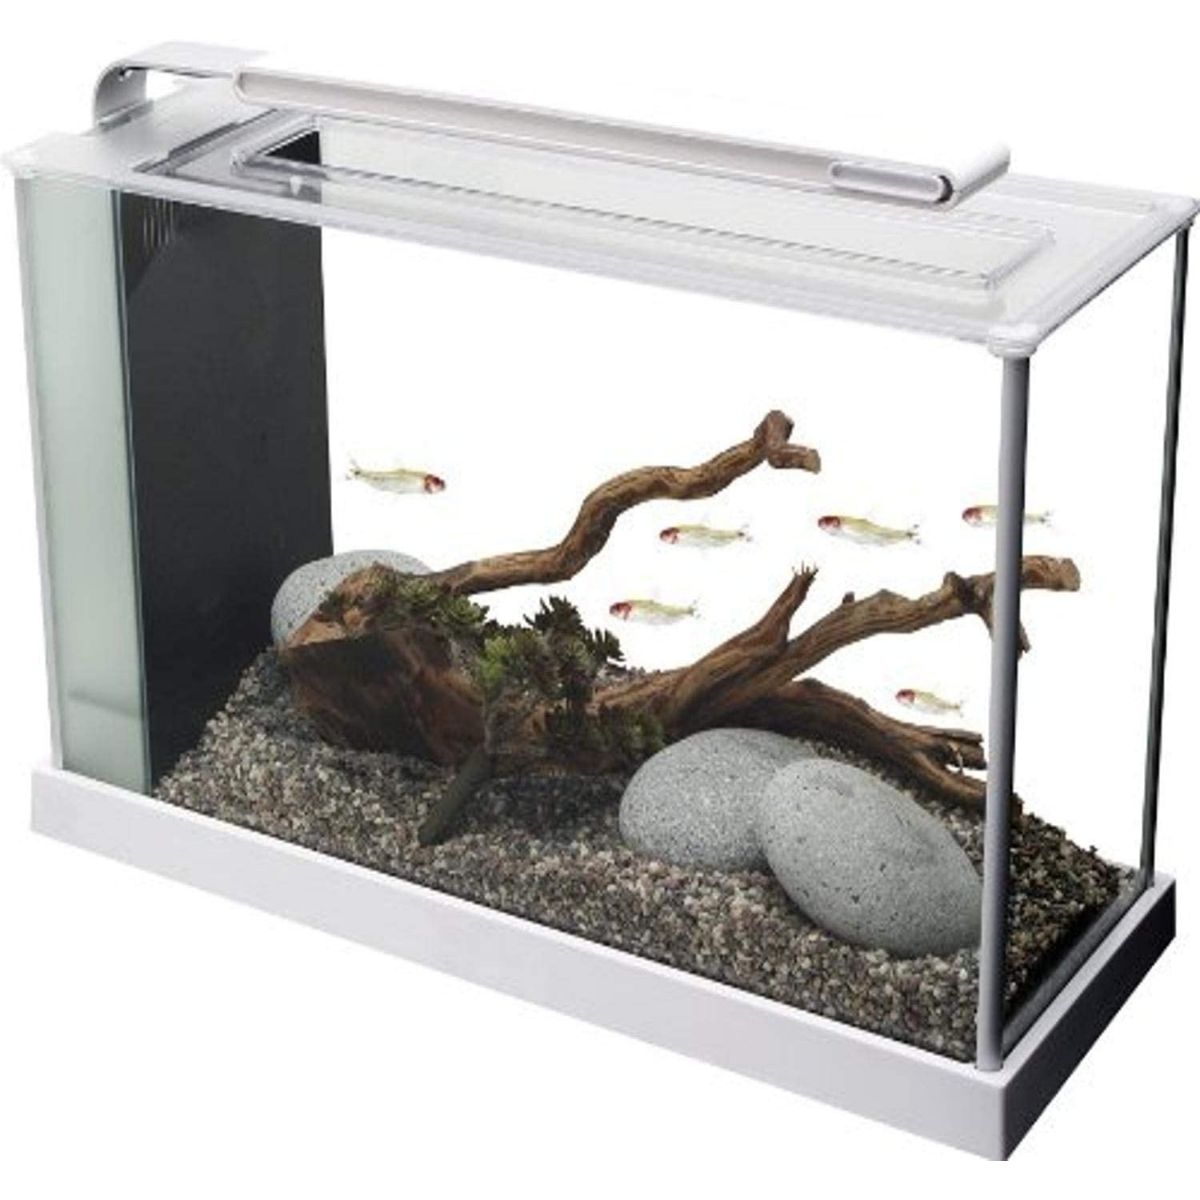 Best Shrimp Tank Fluval Spec V Aquarium